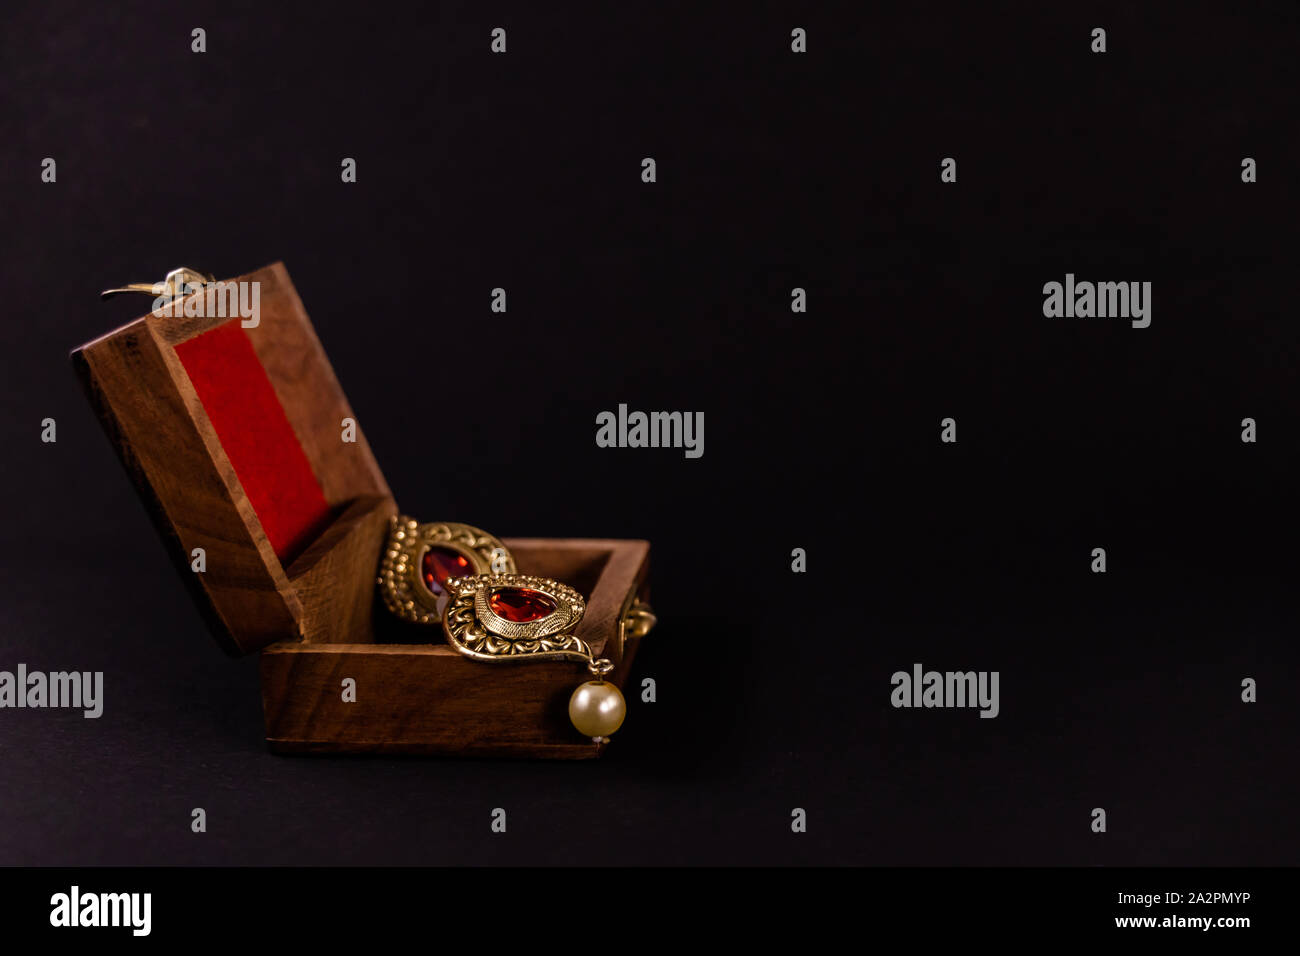 Paar Golden Earing in Holz- Geschenkbox auf schwarzem Hintergrund. Traditionelle Earing Geschenk Konzept Stockfoto